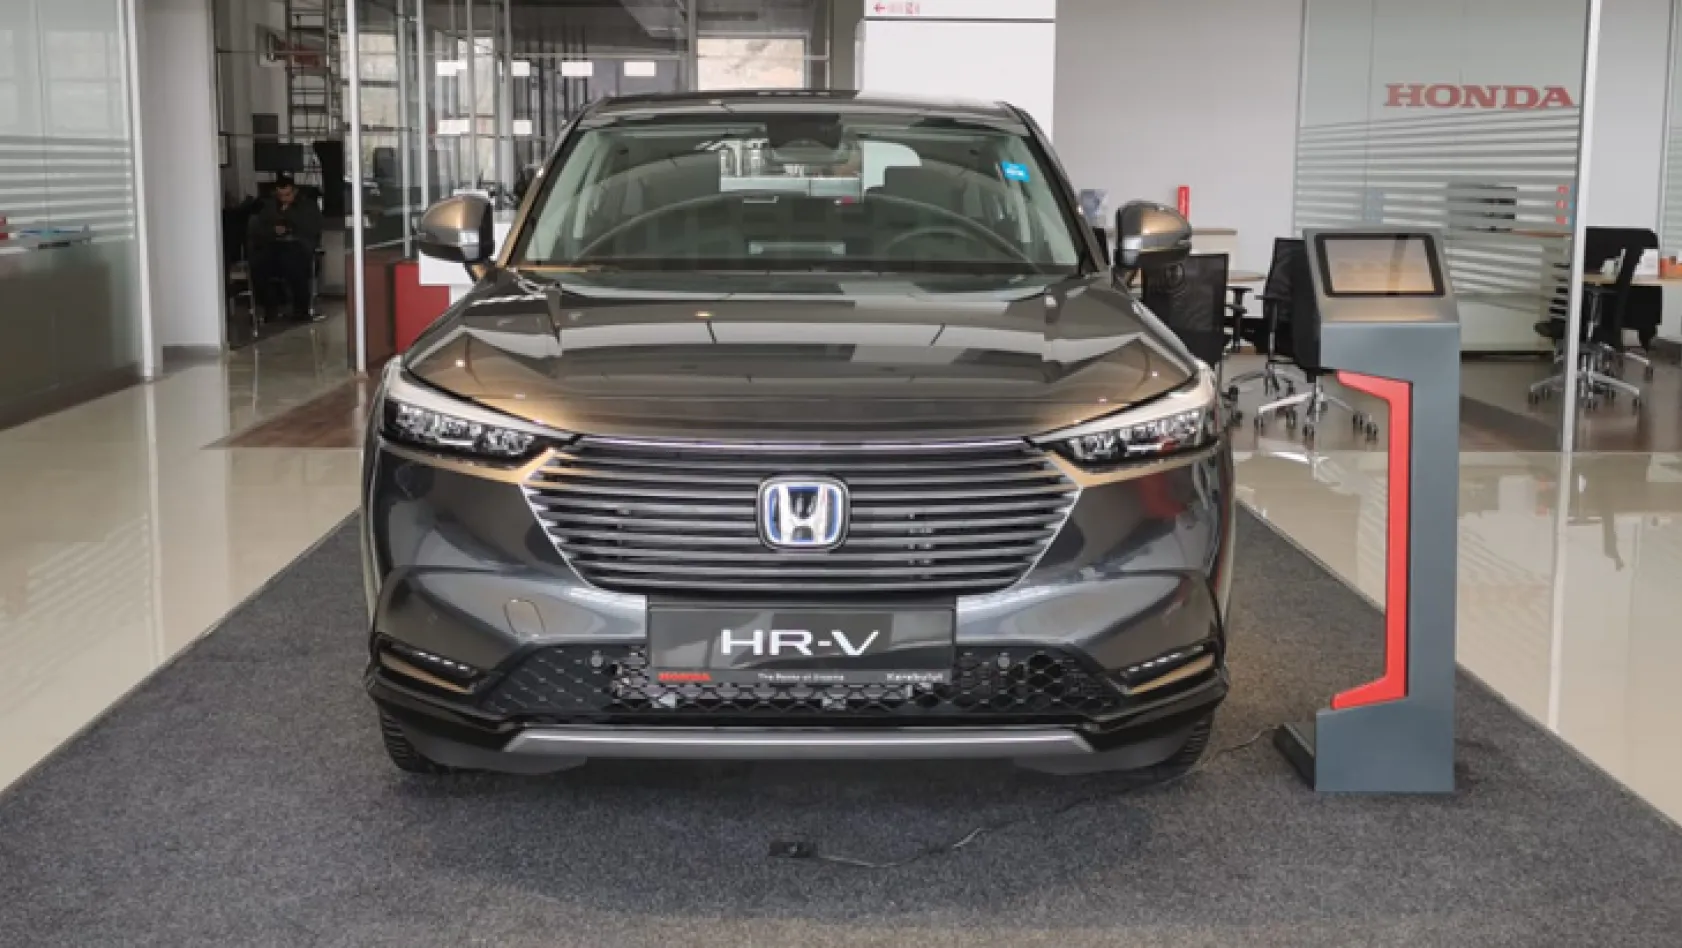 Yeni HR-V Honda Karabulut'ta